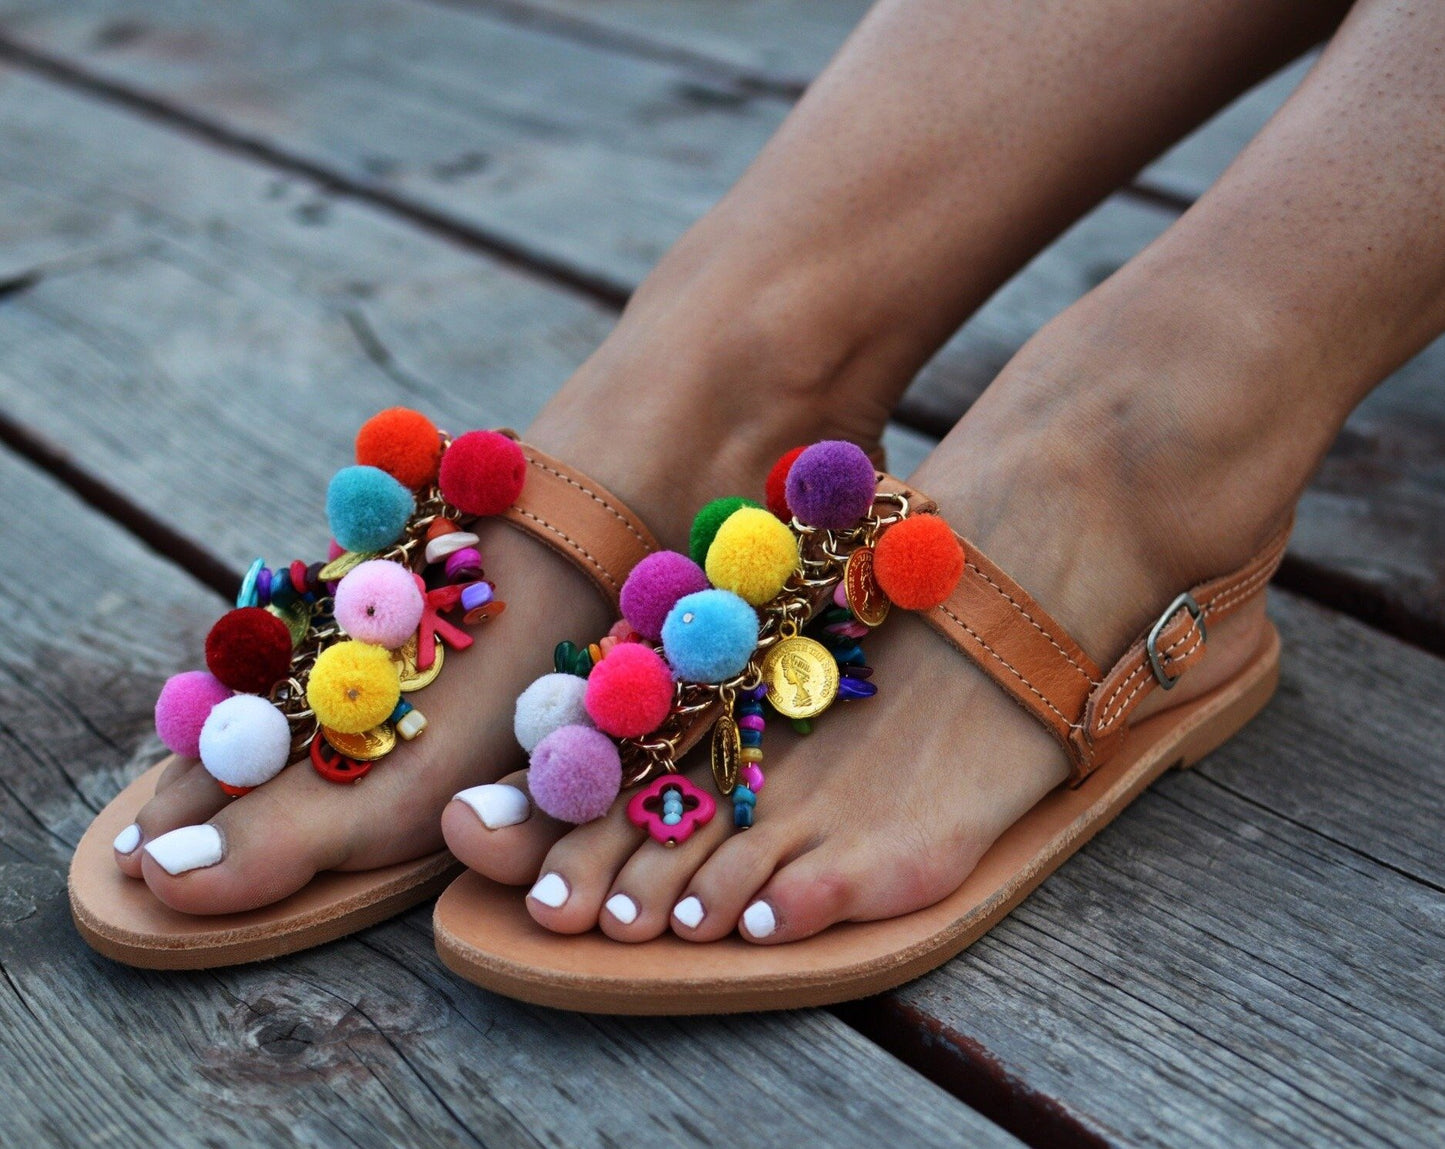 handmade greek sandals, summer sandals